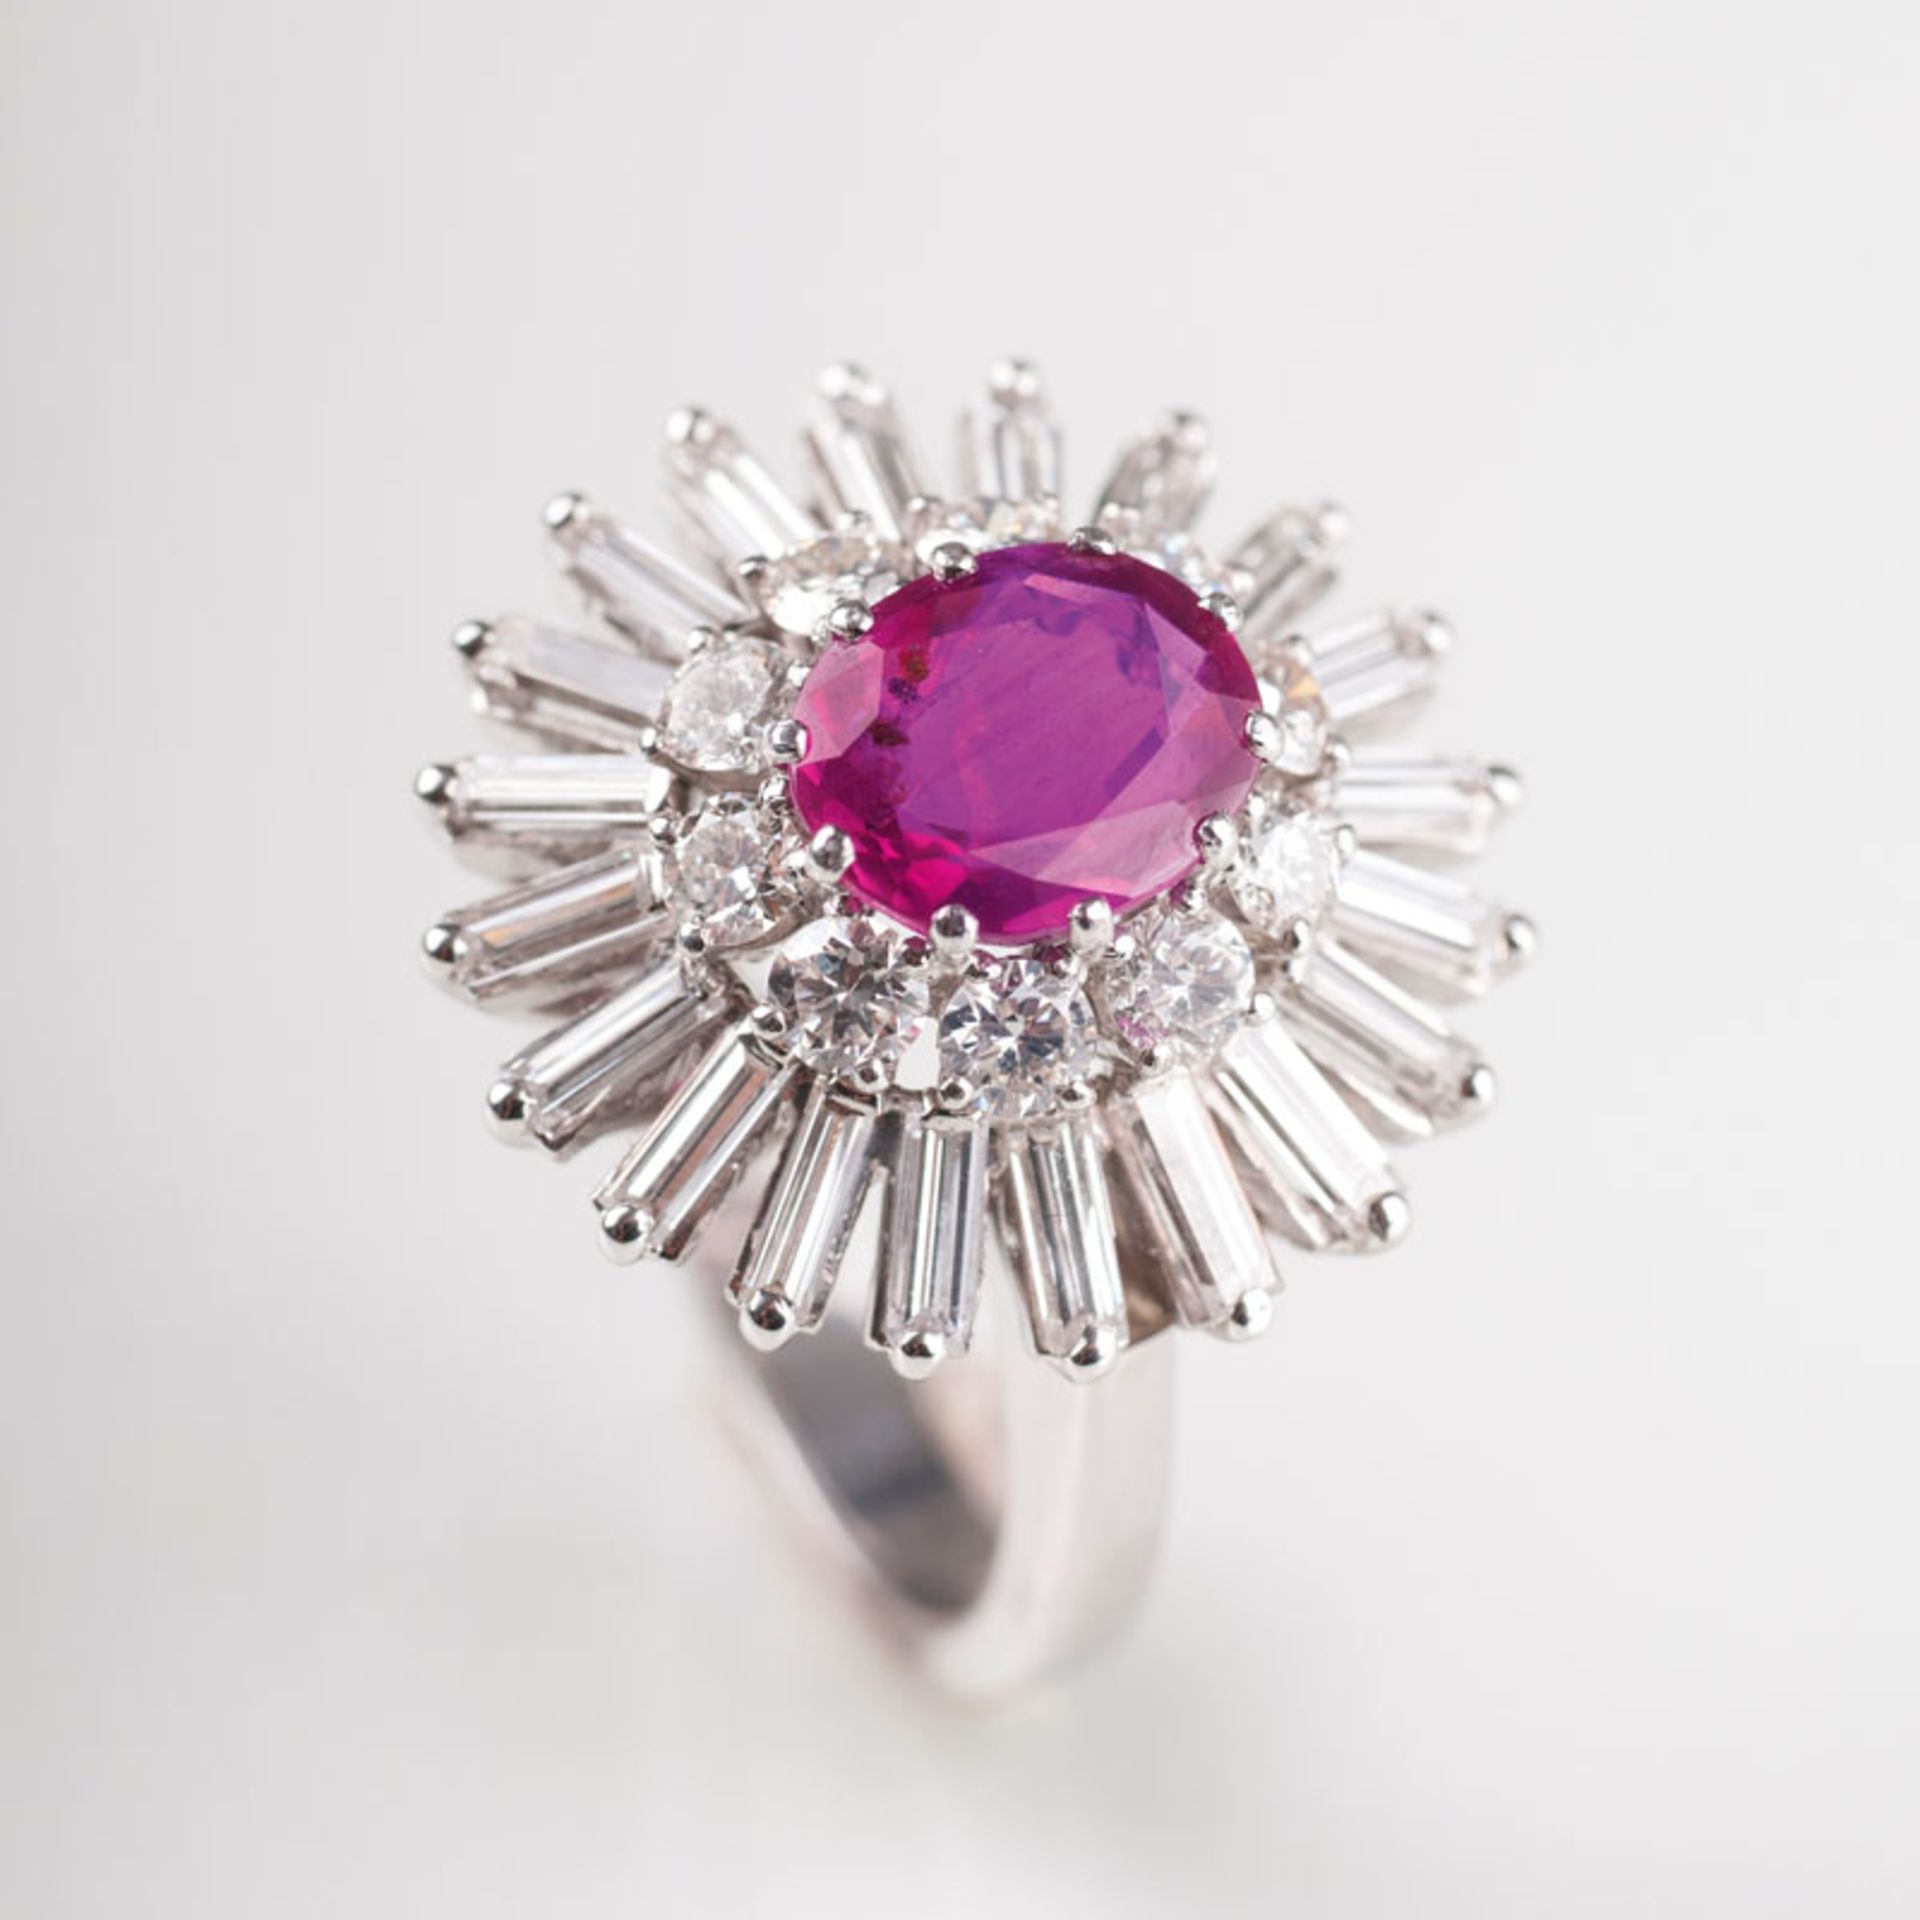 Vintage Diamant-Ring mit natürlichem Rubin Um 1960. 18 kt. WG, gest. Der natürliche, pinkisch-rote